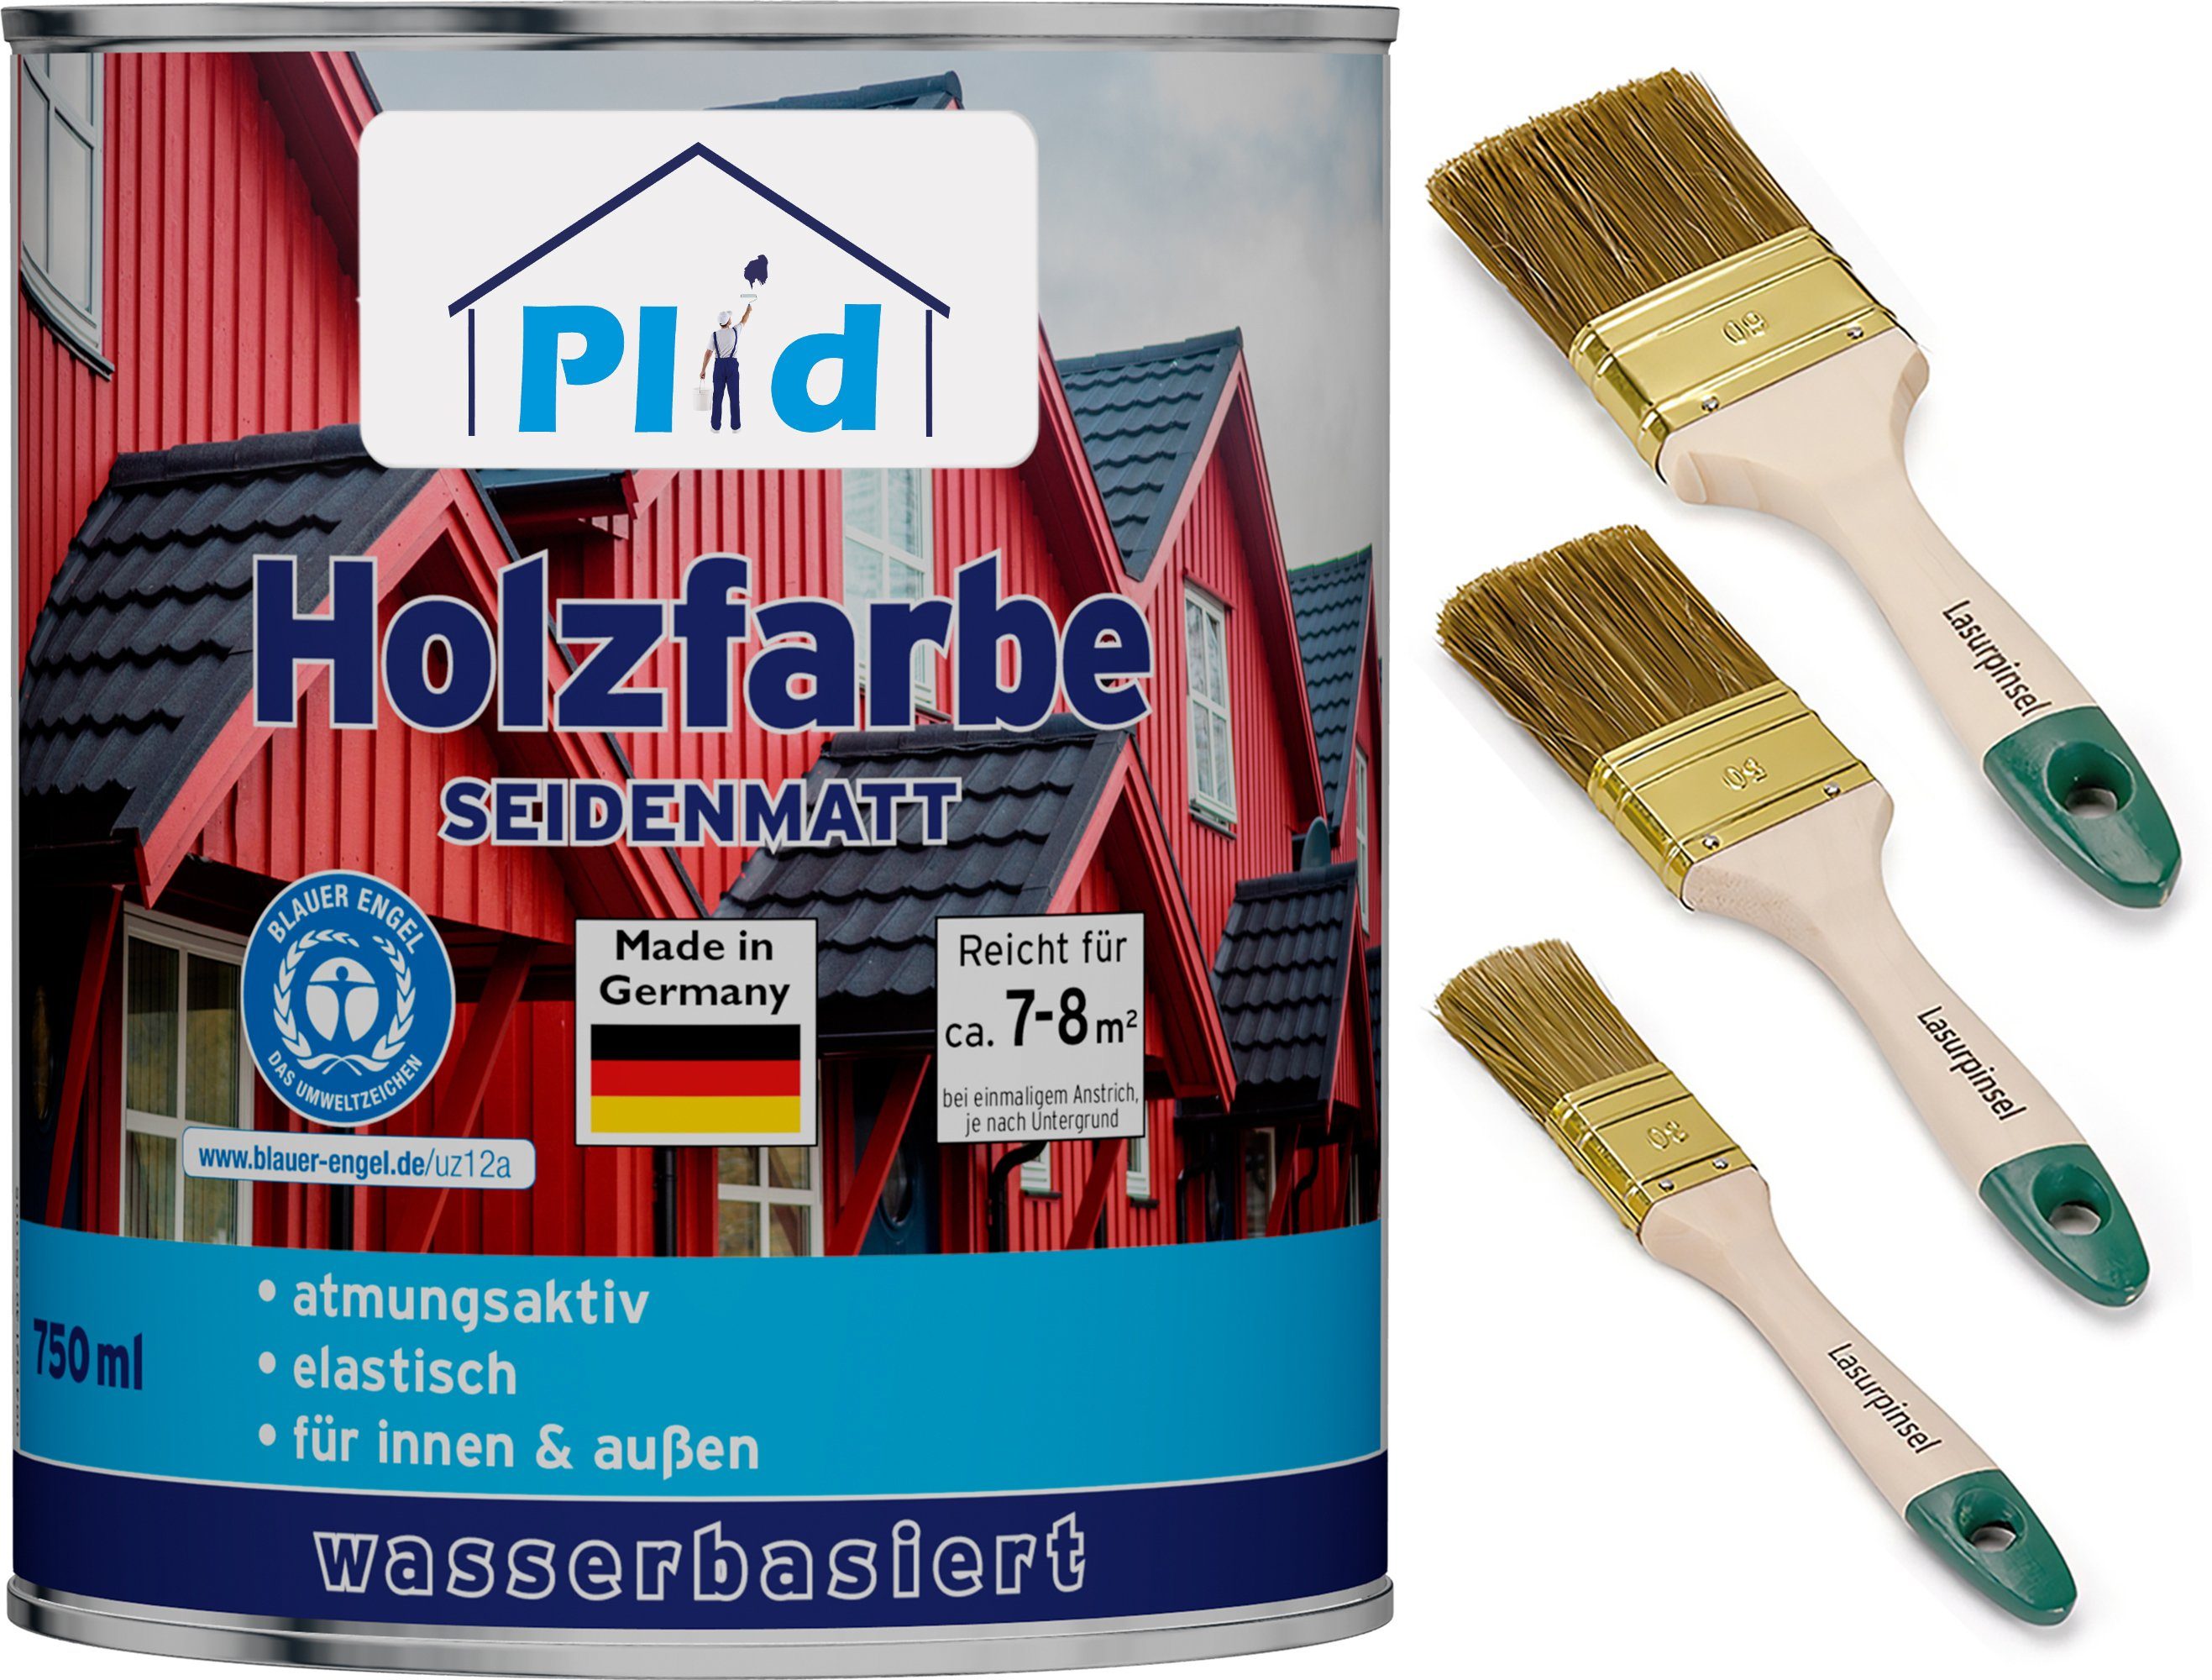 plid Holzlack Premium Holzfarbe für verarbeitungsfertig Holzlack Schnelltrocknend, Farbe Silbergrau Holz Pinsel